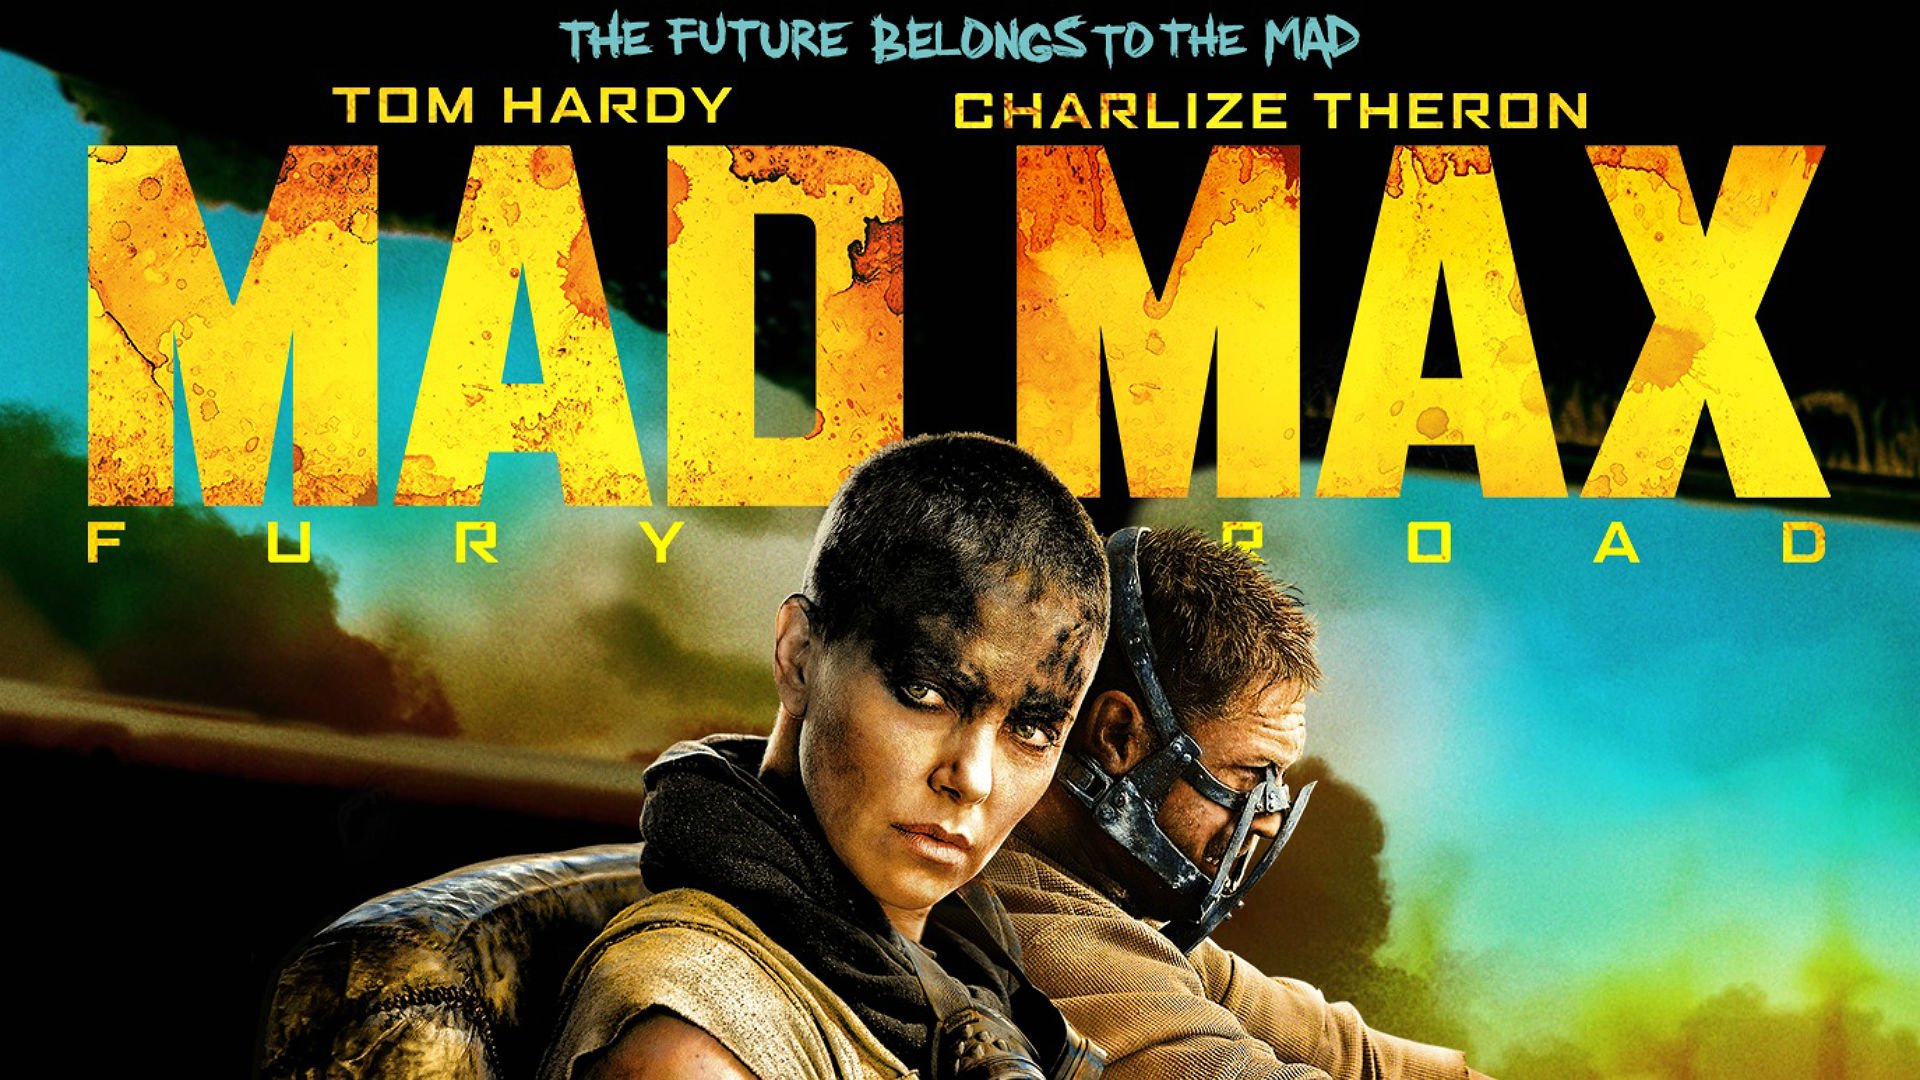 Mad Max: Fury Road (2015) IMDb: 8.1